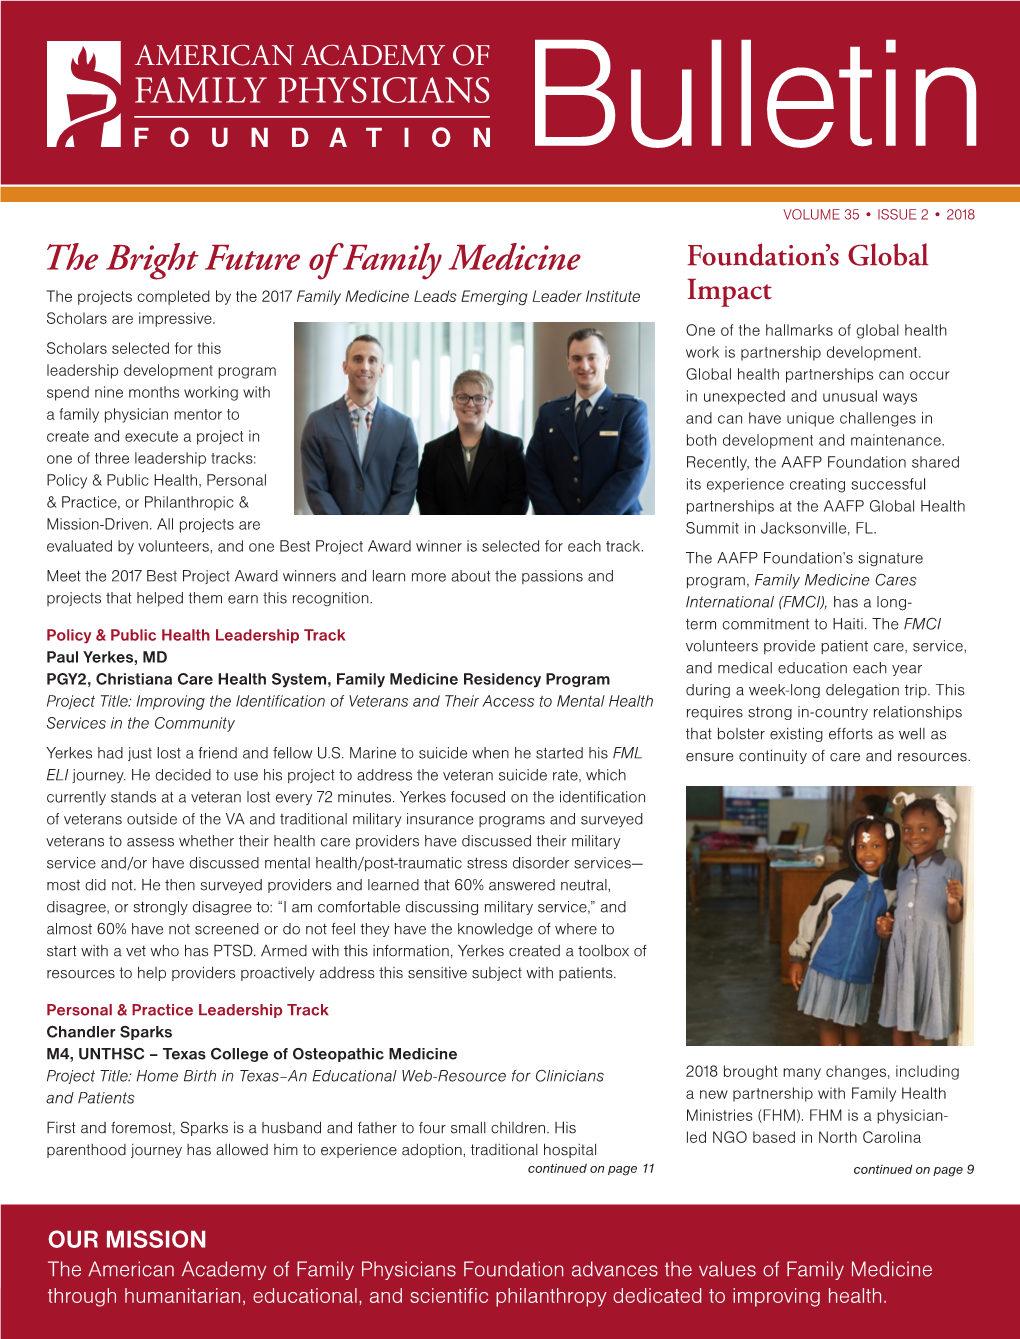 The Bright Future of Family Medicine